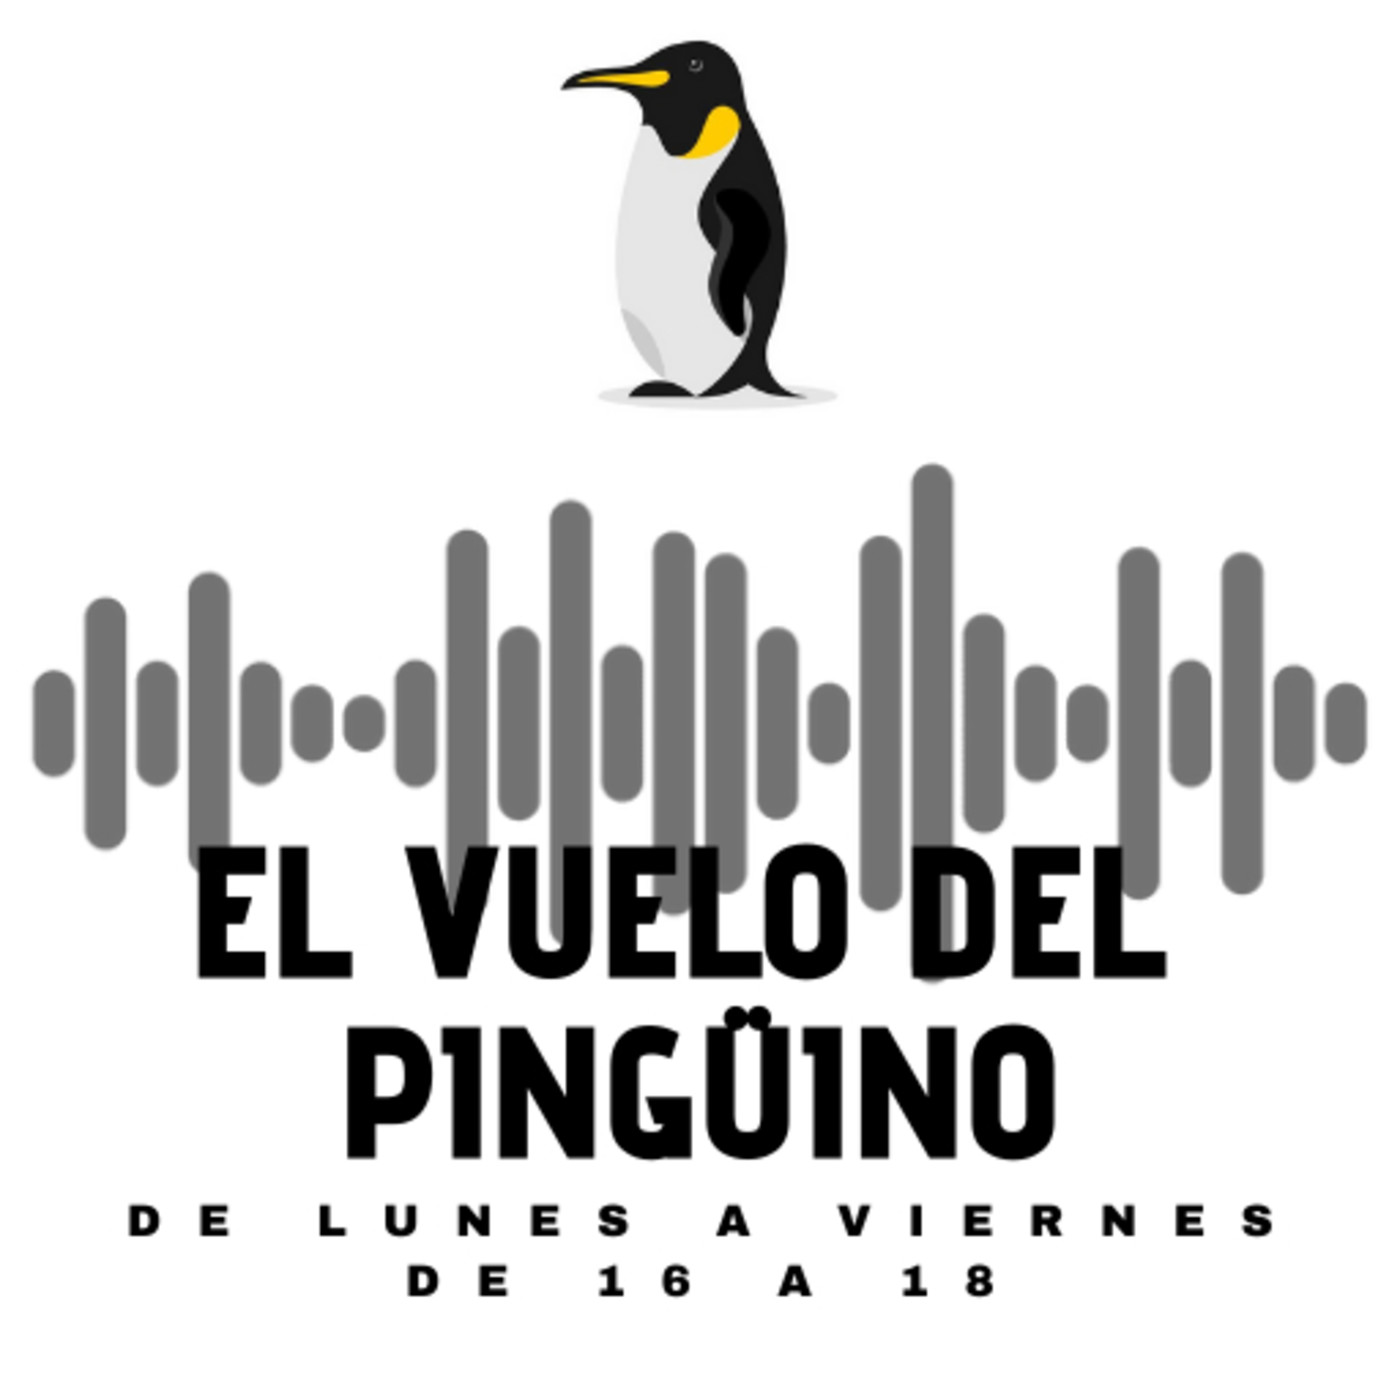 El vuelo del Pingüino - Lunes - Actualidad, humor, cultura y música - 09-02-2021